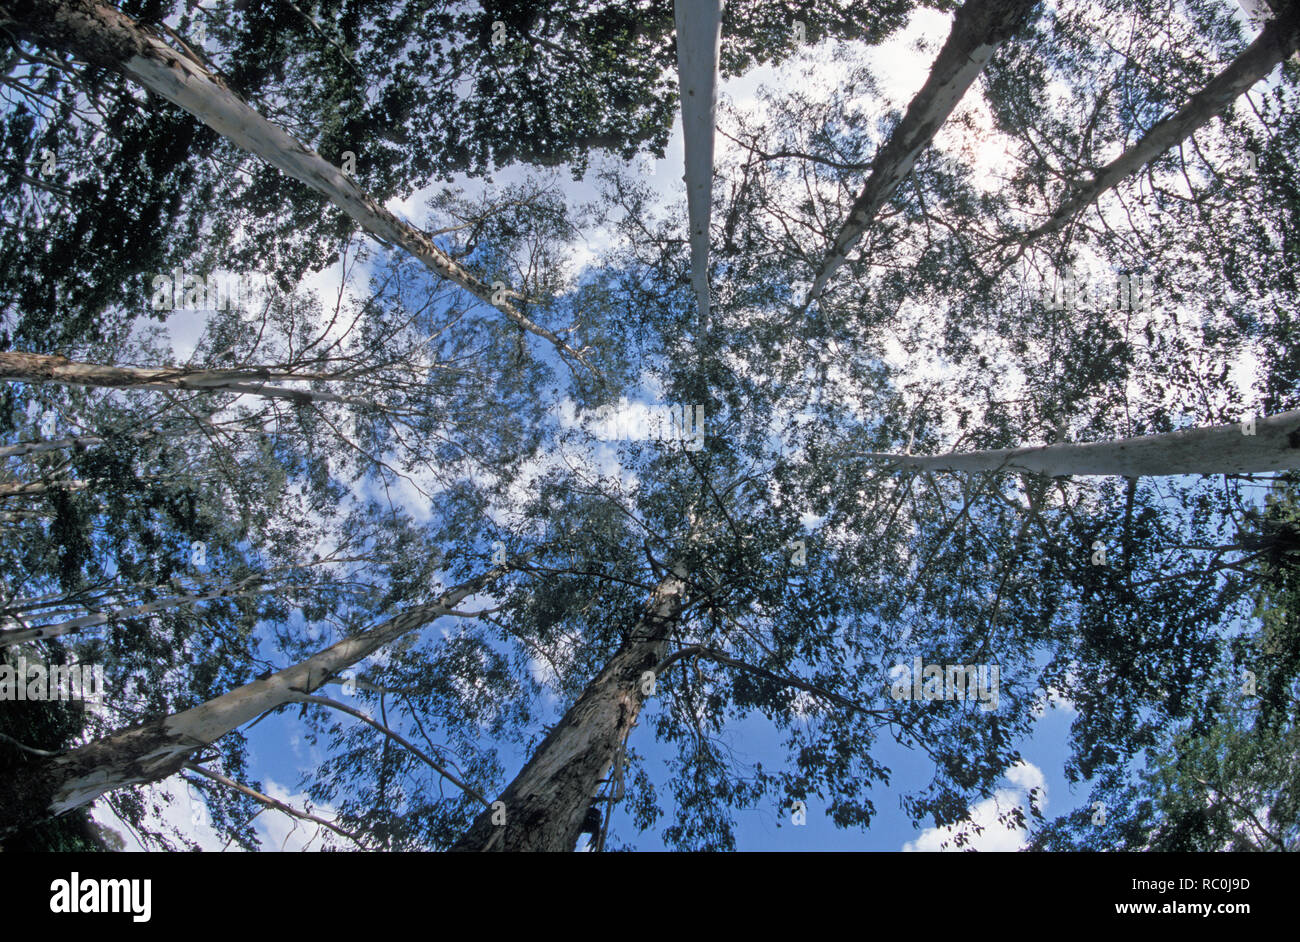 Una perspectiva de Cambio Climático - mirando al cielo con altísimos árboles encías australiano alcanzar el cielo que rodean la escena. Cielo azul brillante acompañado con dispersas nubes blancas soplado mejora la captura de imágenes con el calentamiento global. Foto de stock